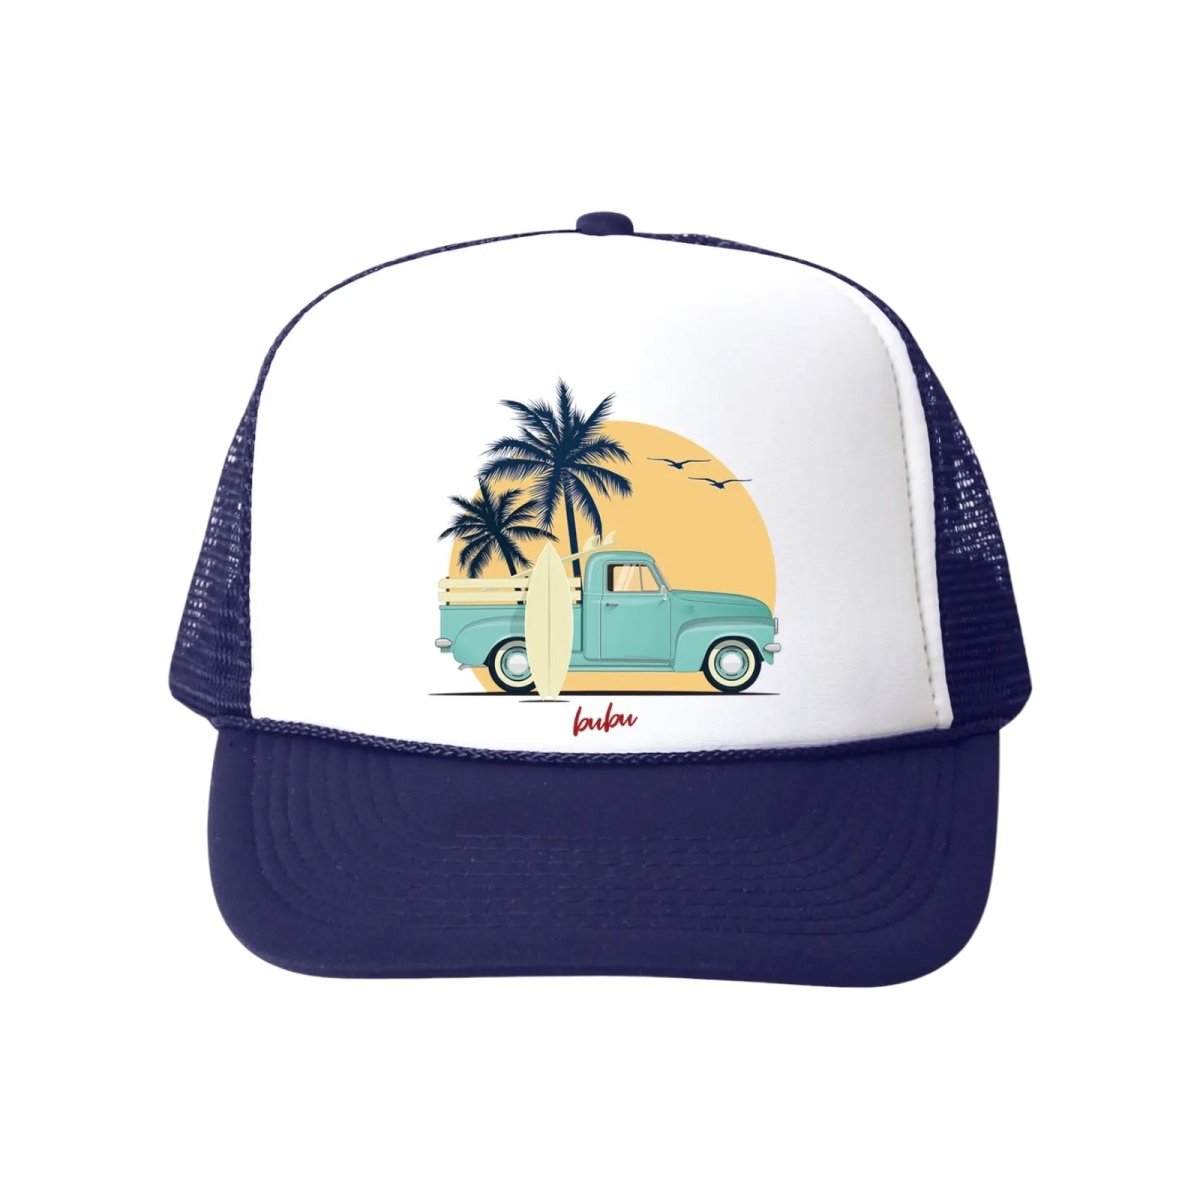 BEACH TRUCK TRUCKER HAT - HATS